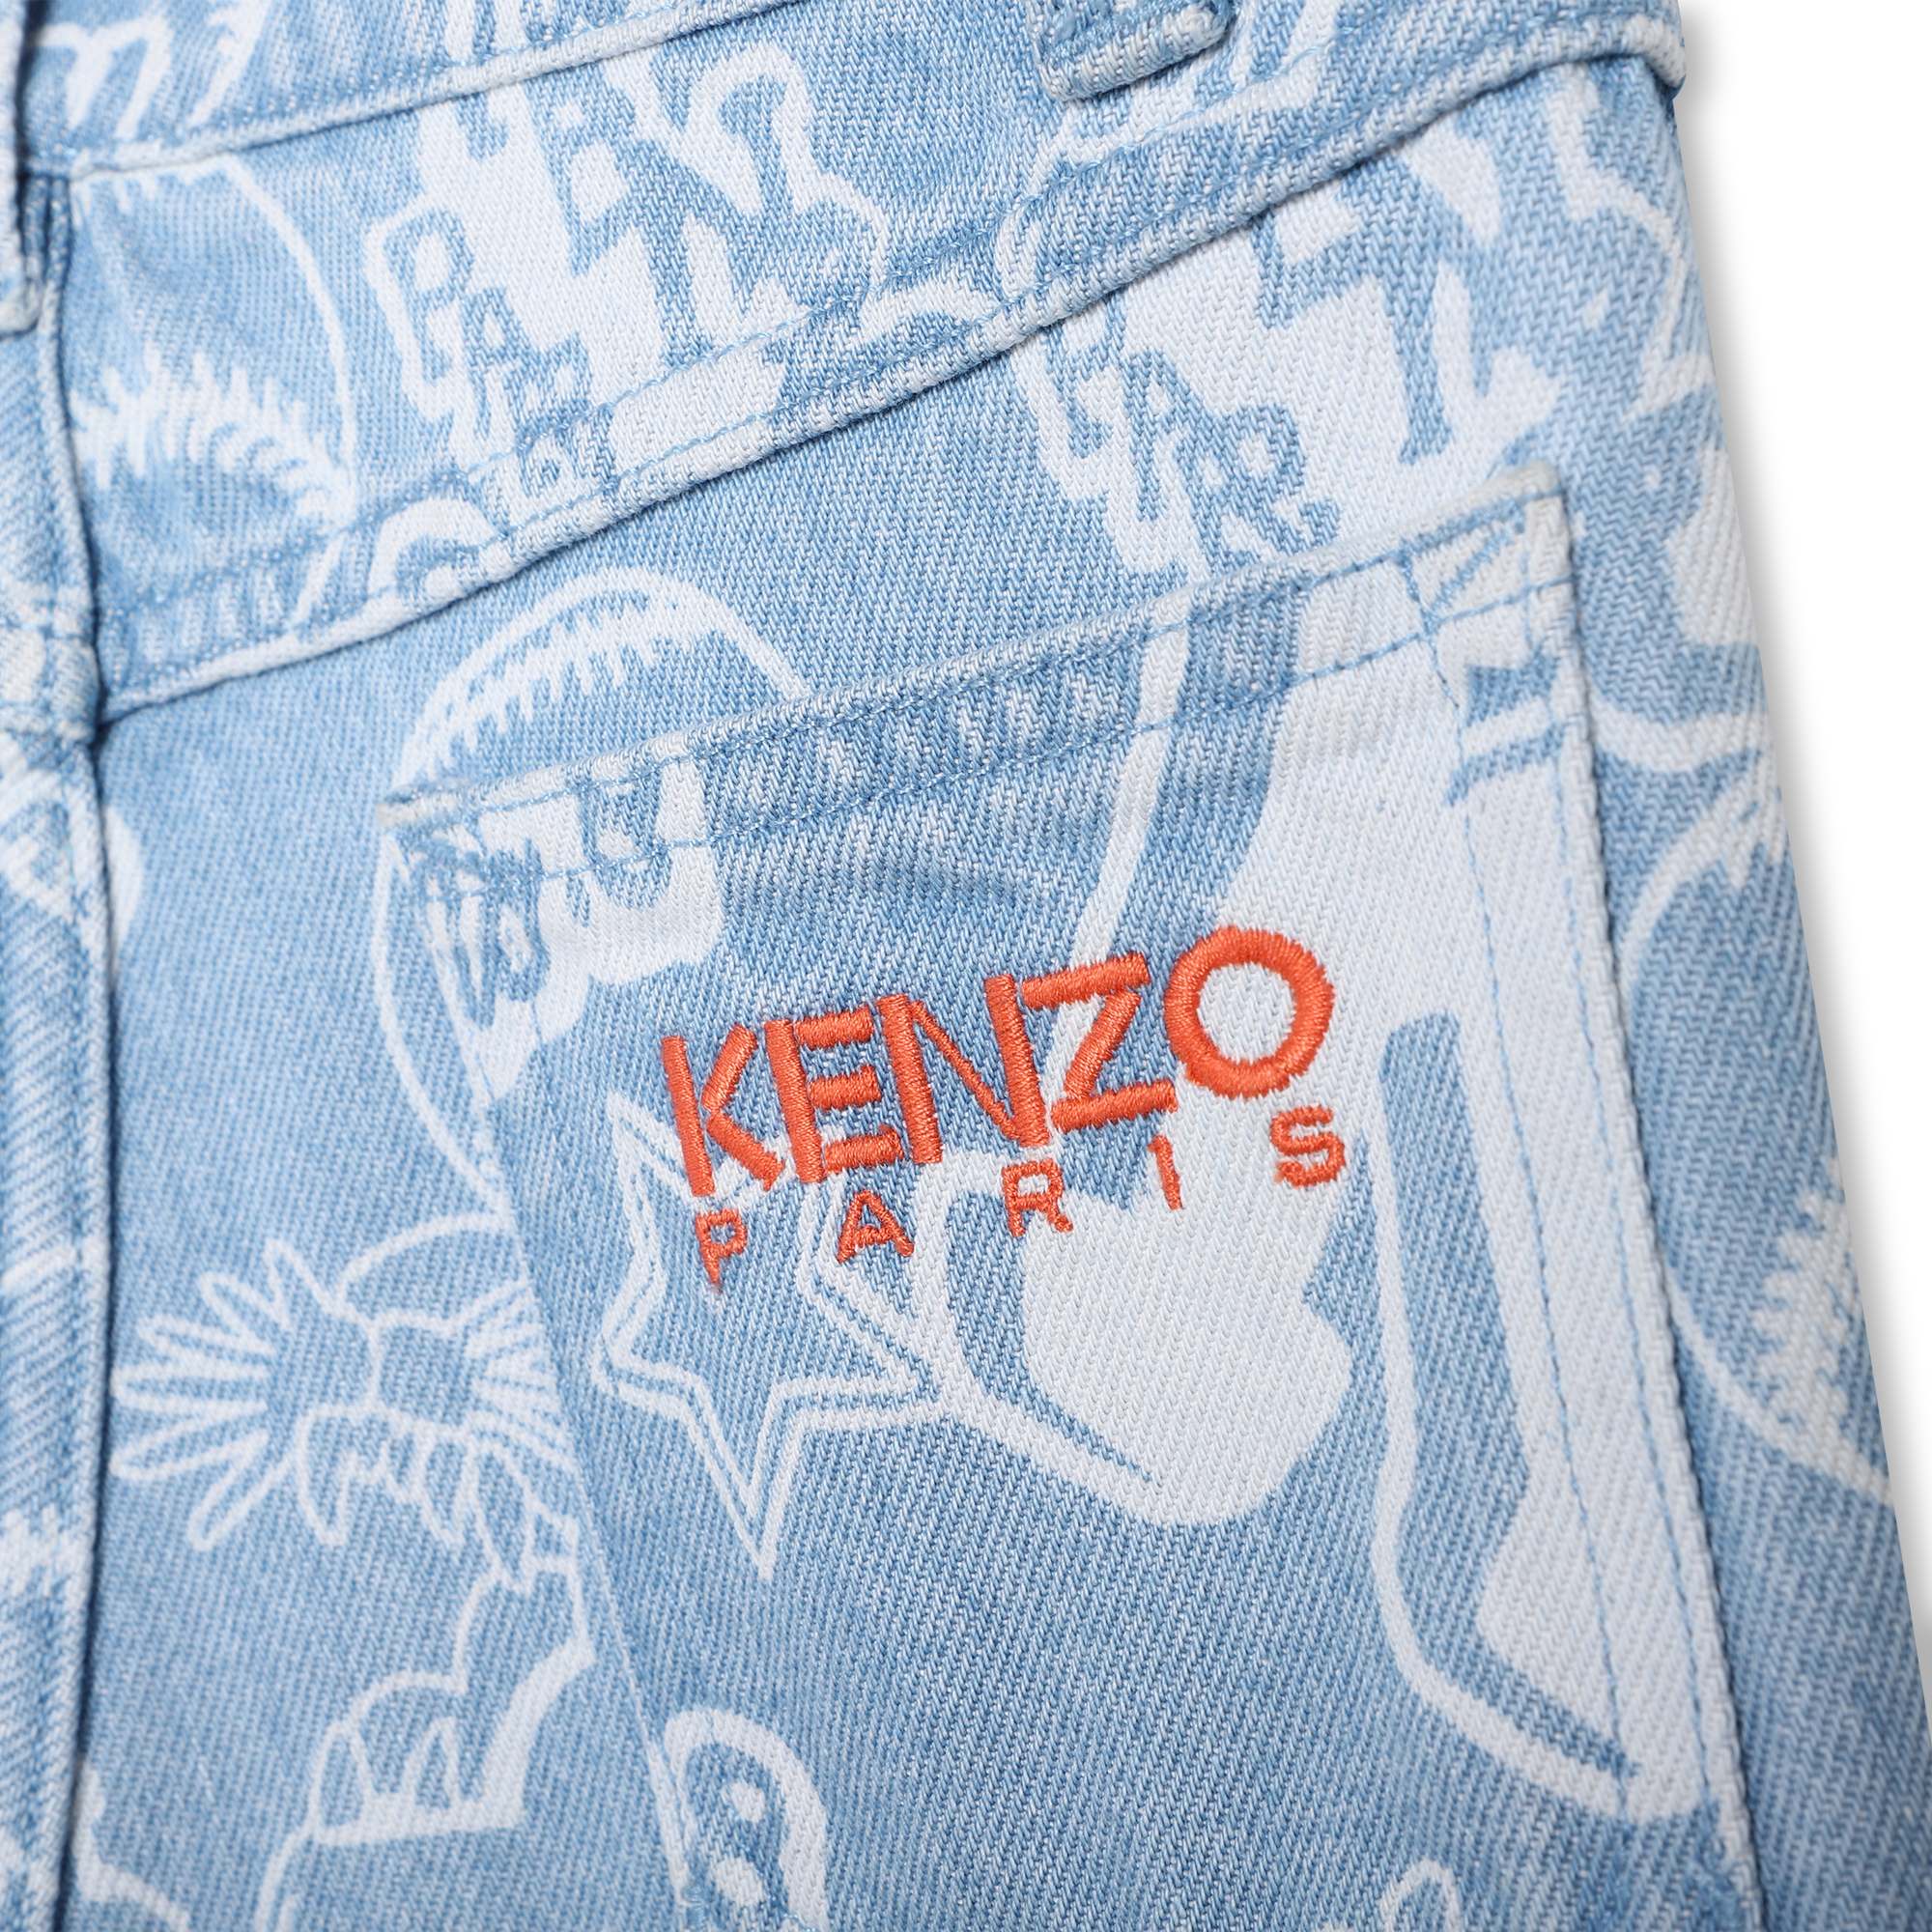 Pantalon en jean imprimé KENZO KIDS pour GARCON